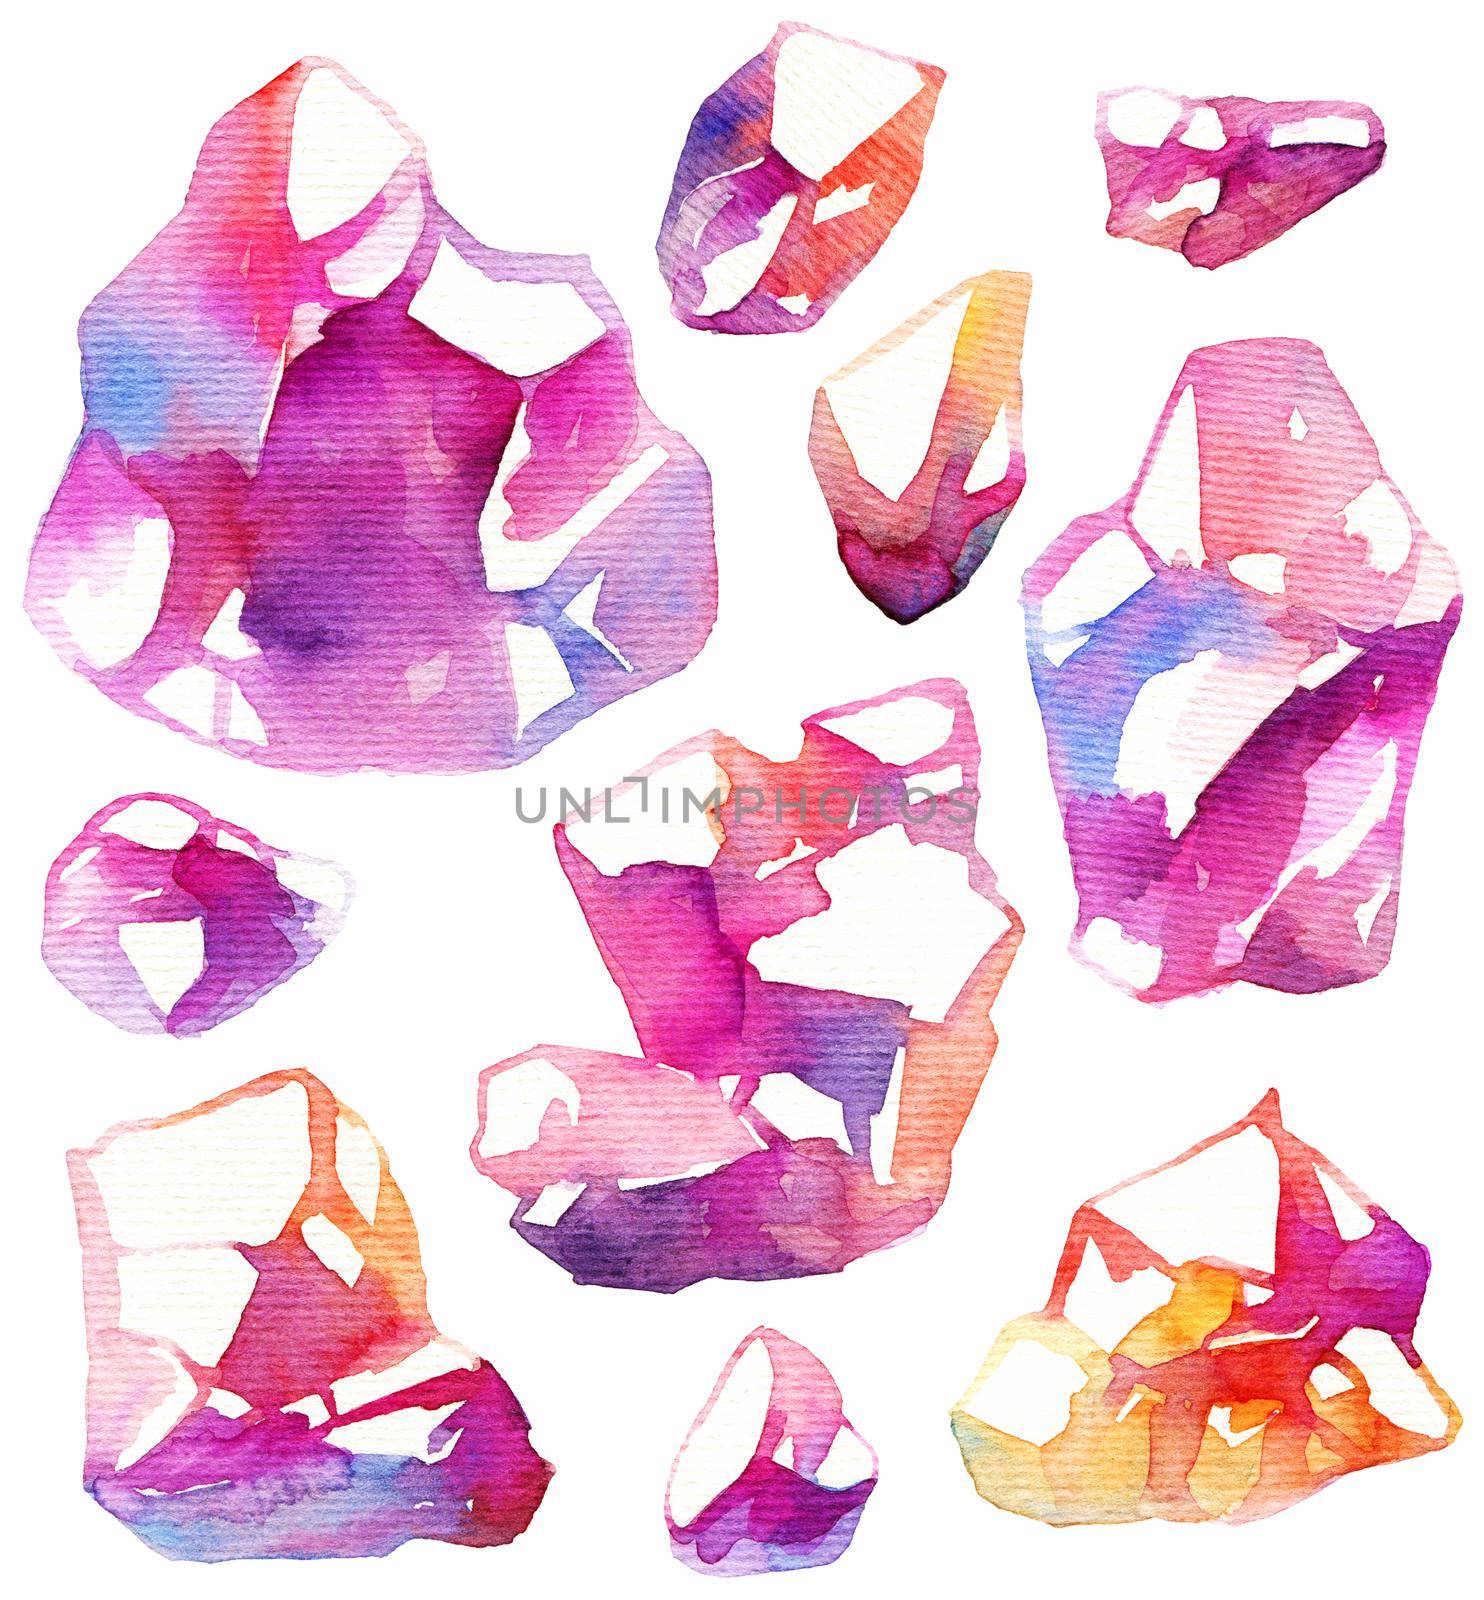 Watercolor crystals by Olatarakanova